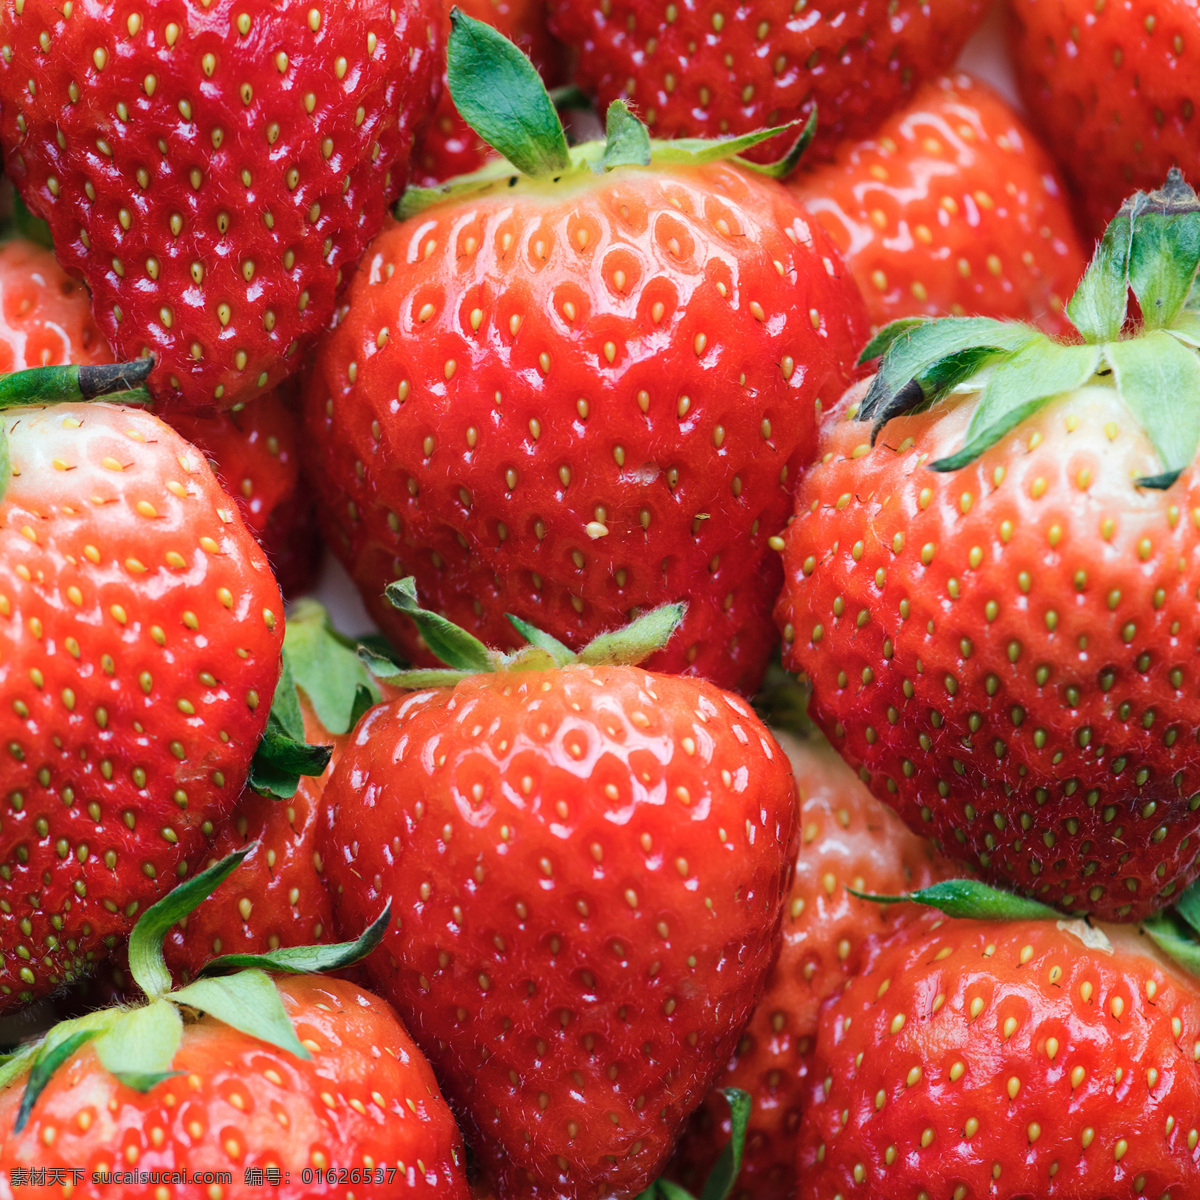 新鲜草莓图片 草莓 香味 果香 果实 草莓叶 草莓汁 喜光照 热带 解暑 止渴 津甜 酸甜 香甜 红色水果 手掌 餐饮与蔬果 生物世界 水果